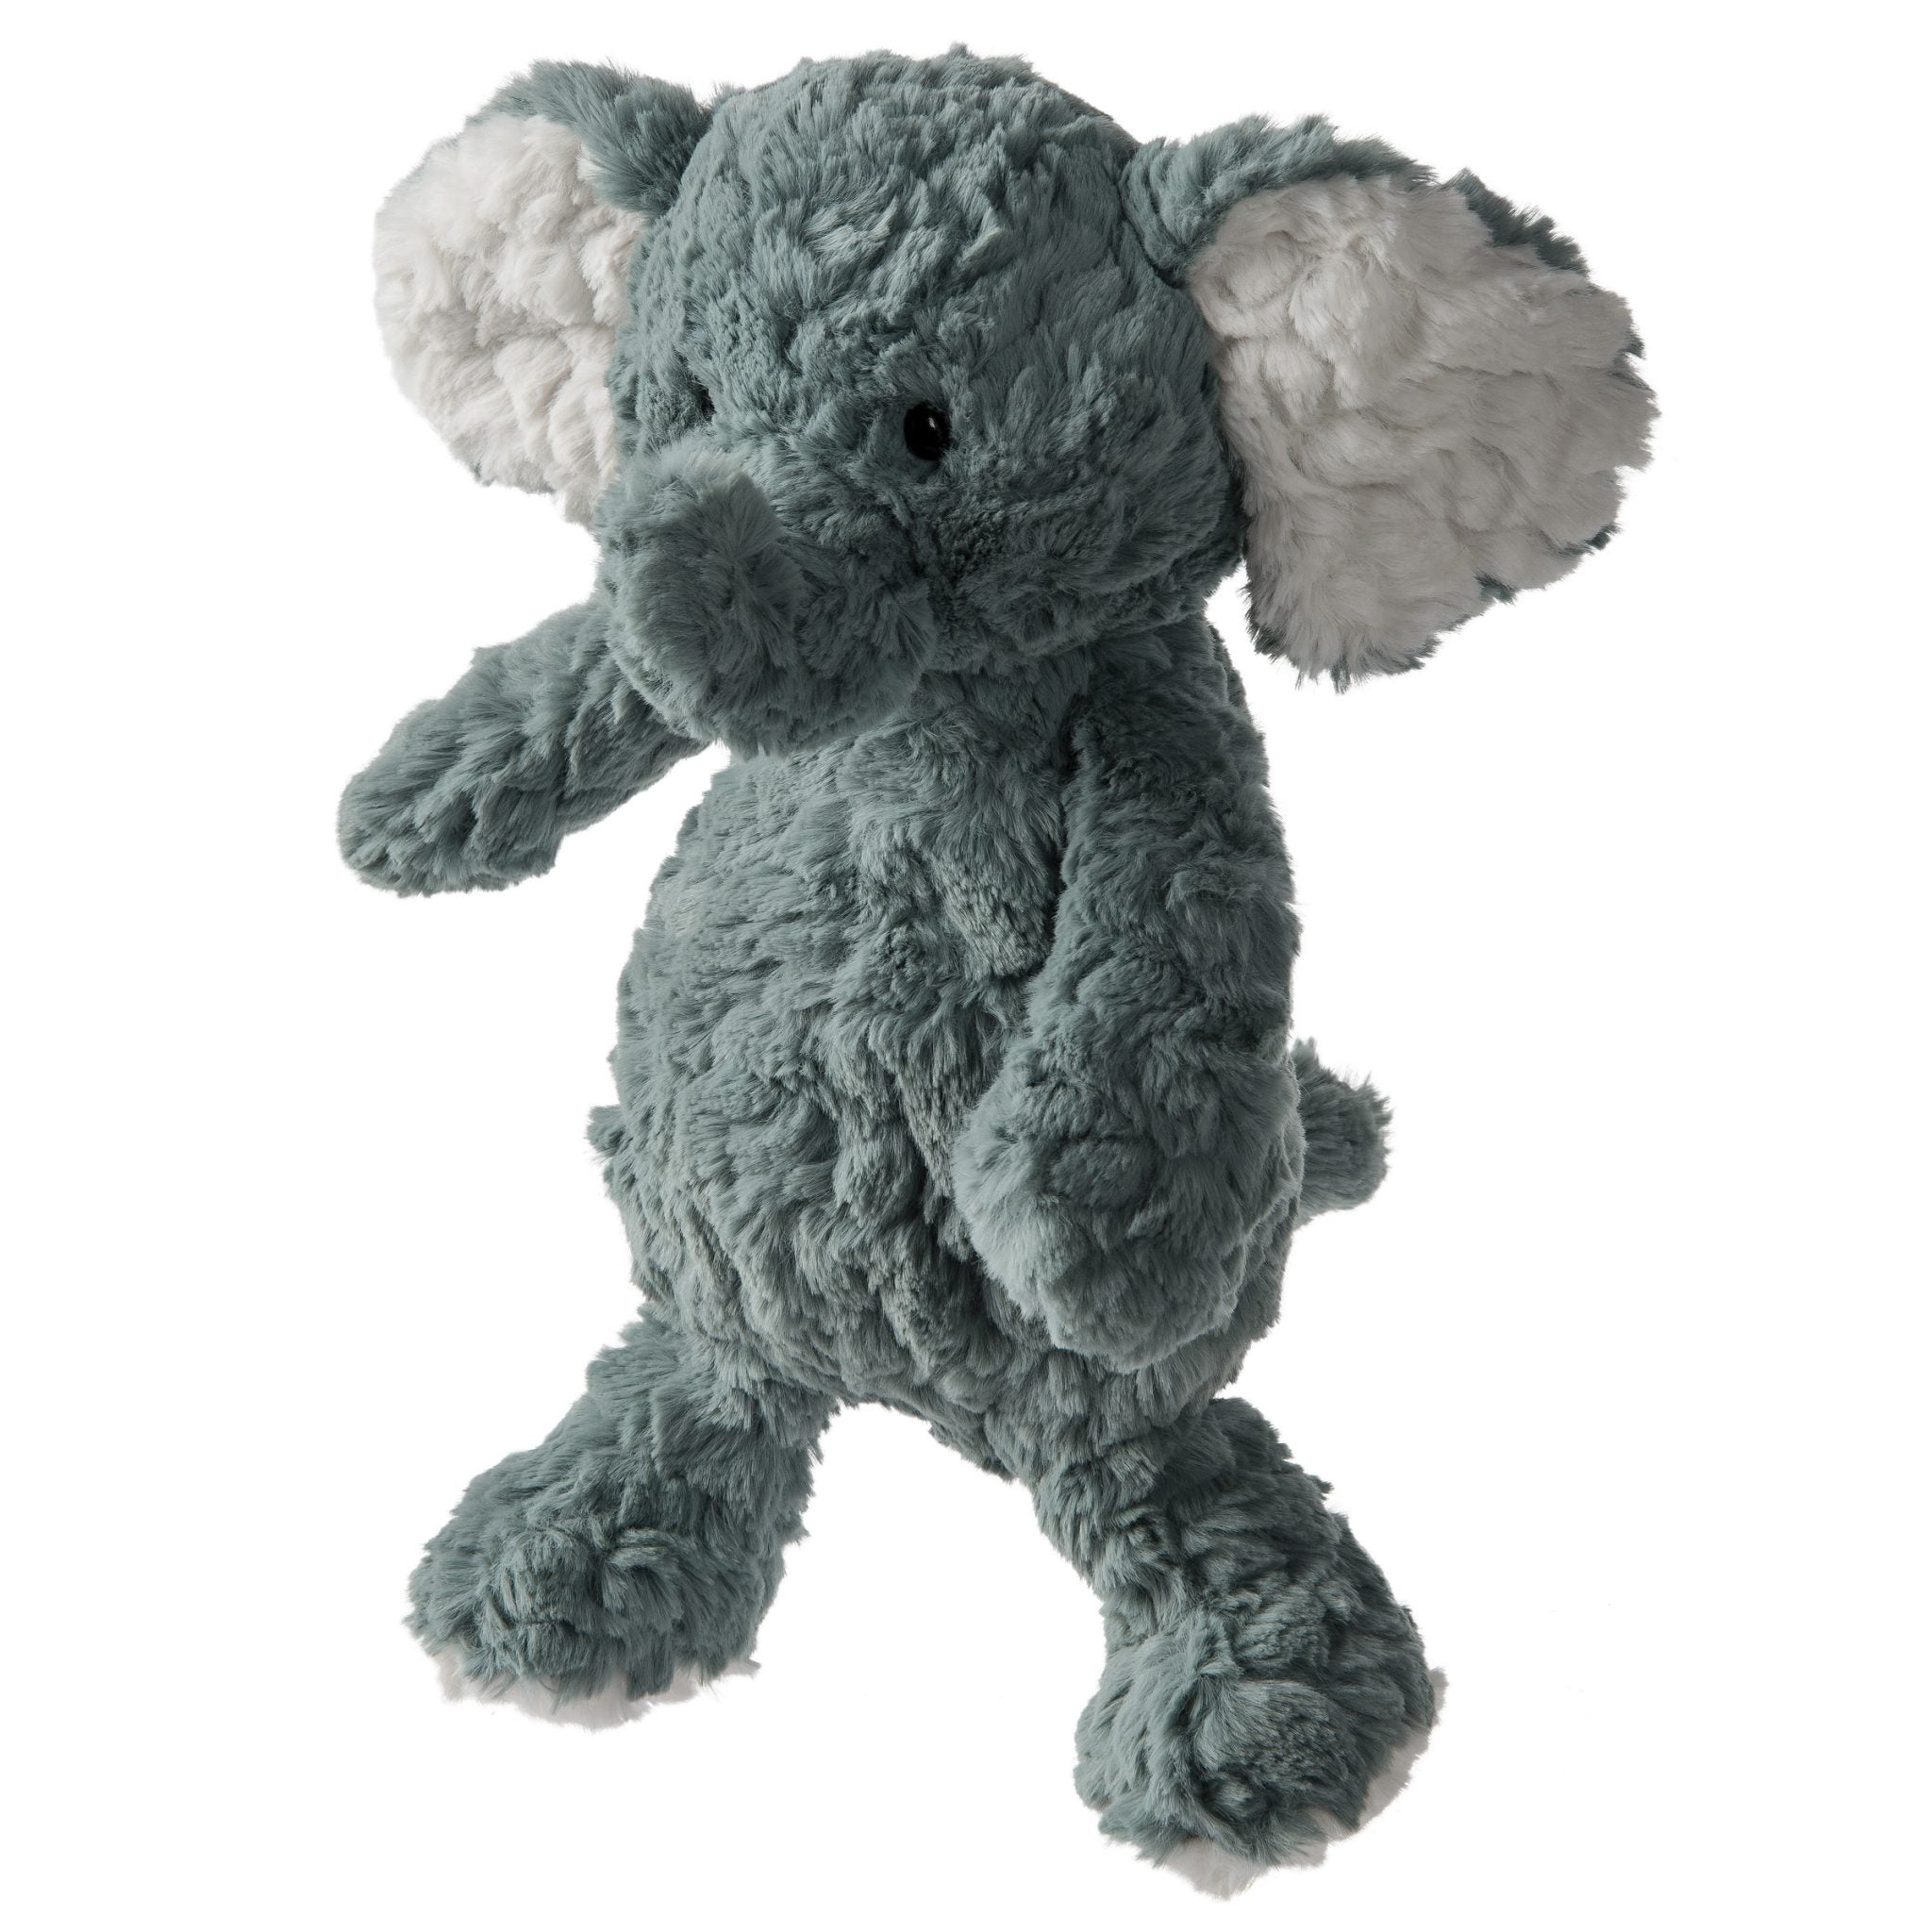 'Slate' blue elephant soft toy with white ears